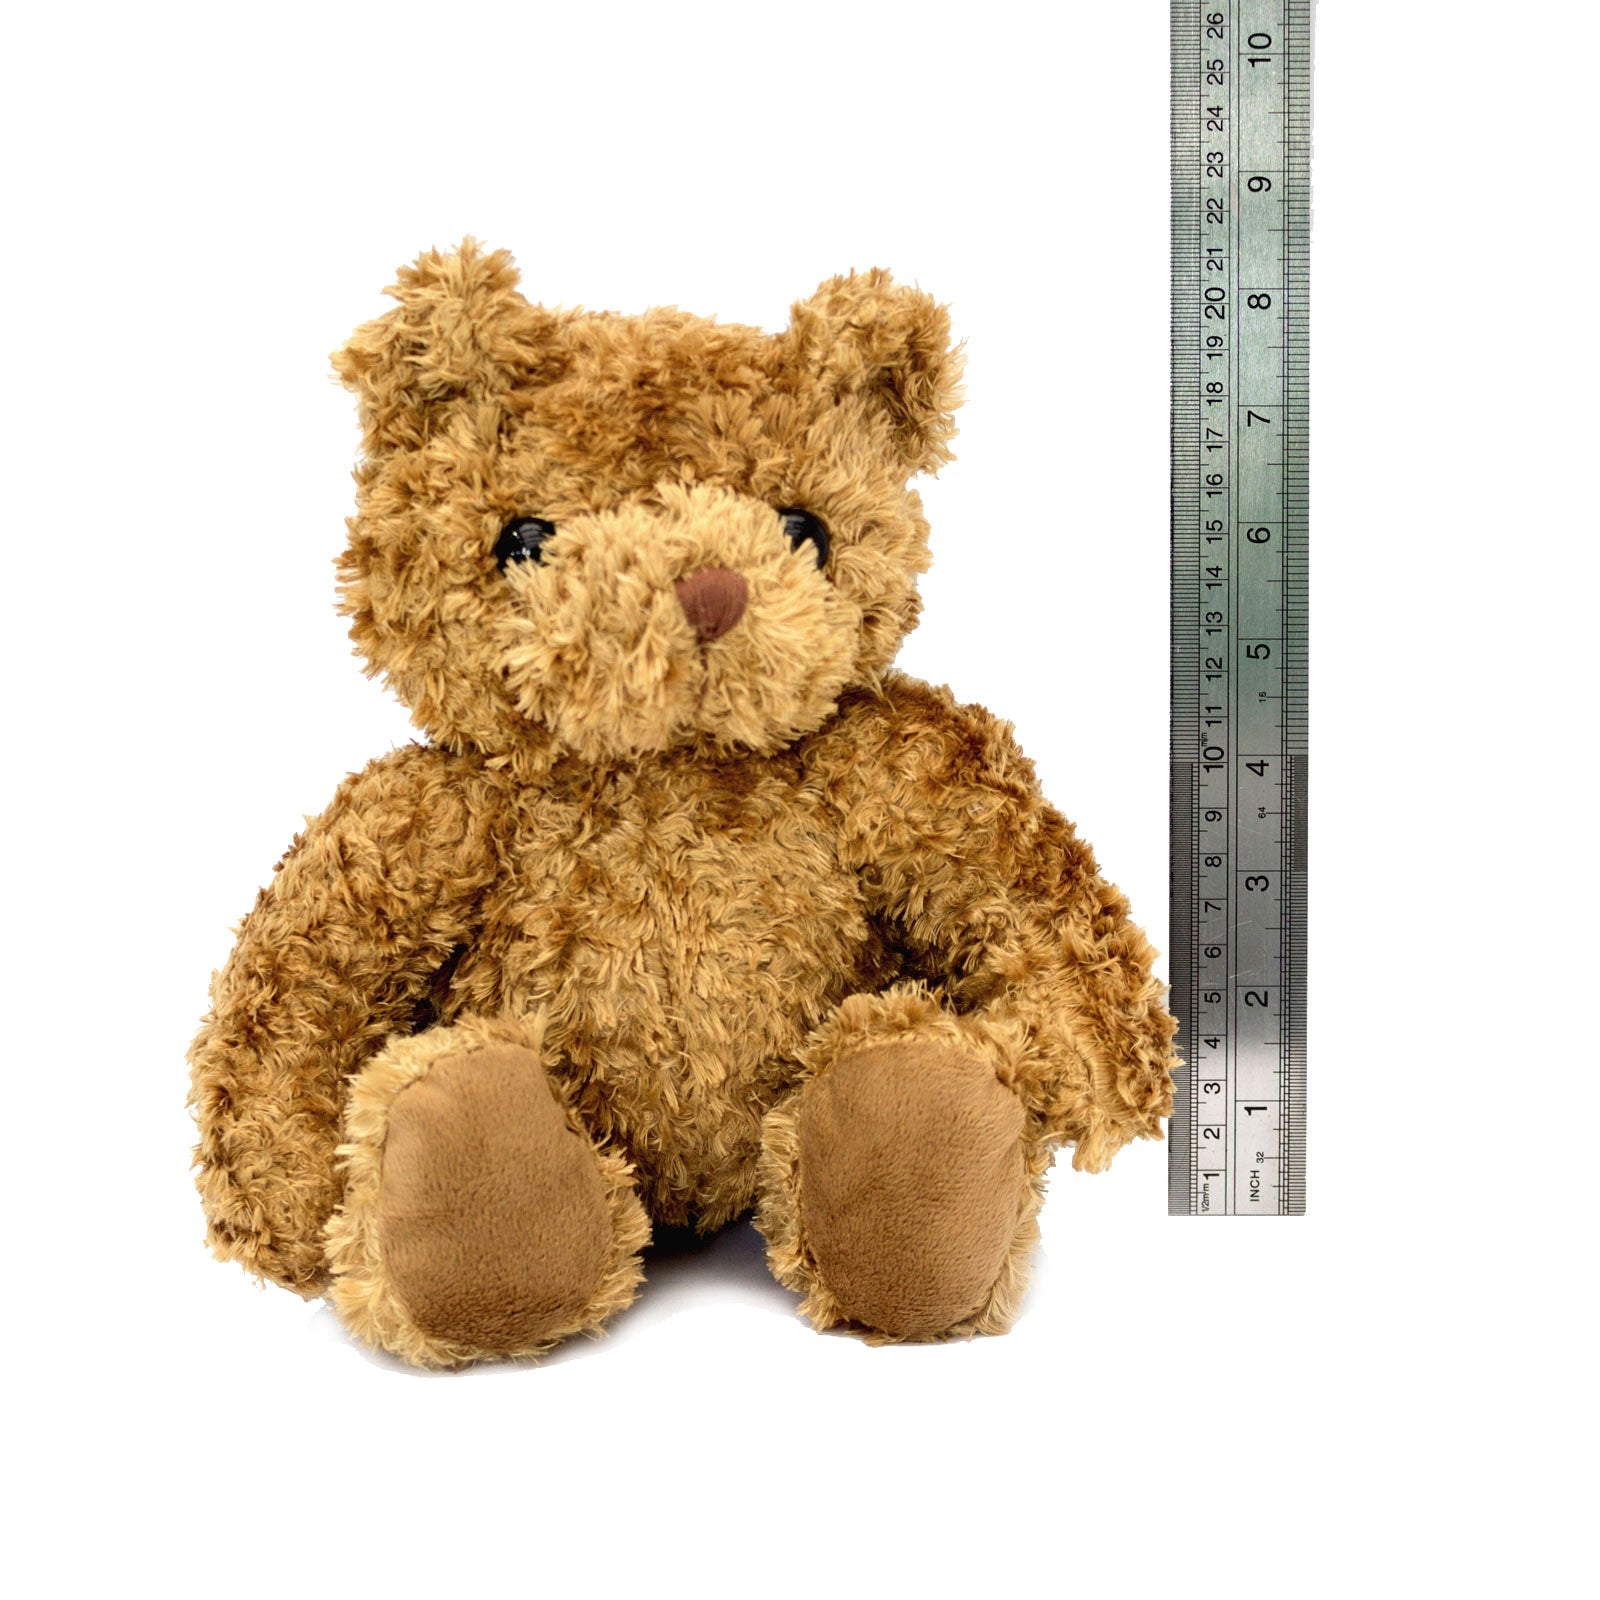 The Greatest Pediatrist Ever - Teddy Bear